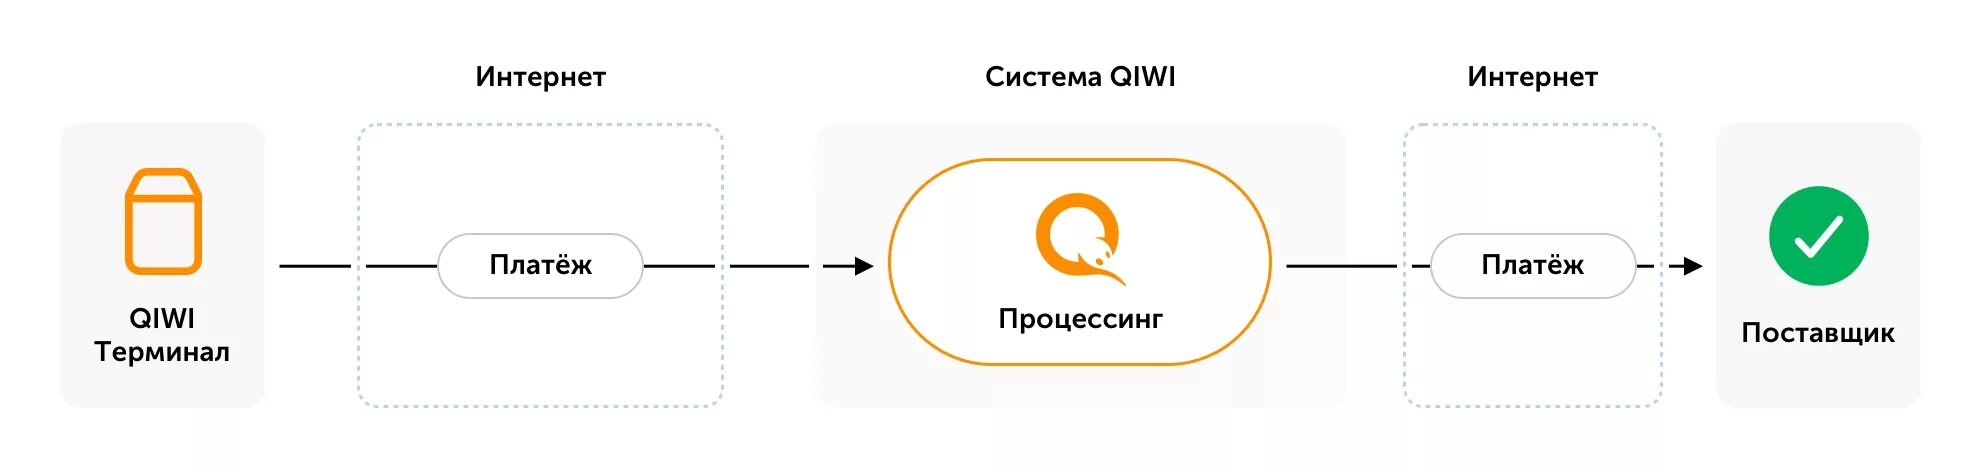 Структура QIWI. Схема электронных платежей QIWI. Информационной системы QIWI. QIWI схемы оплаты.